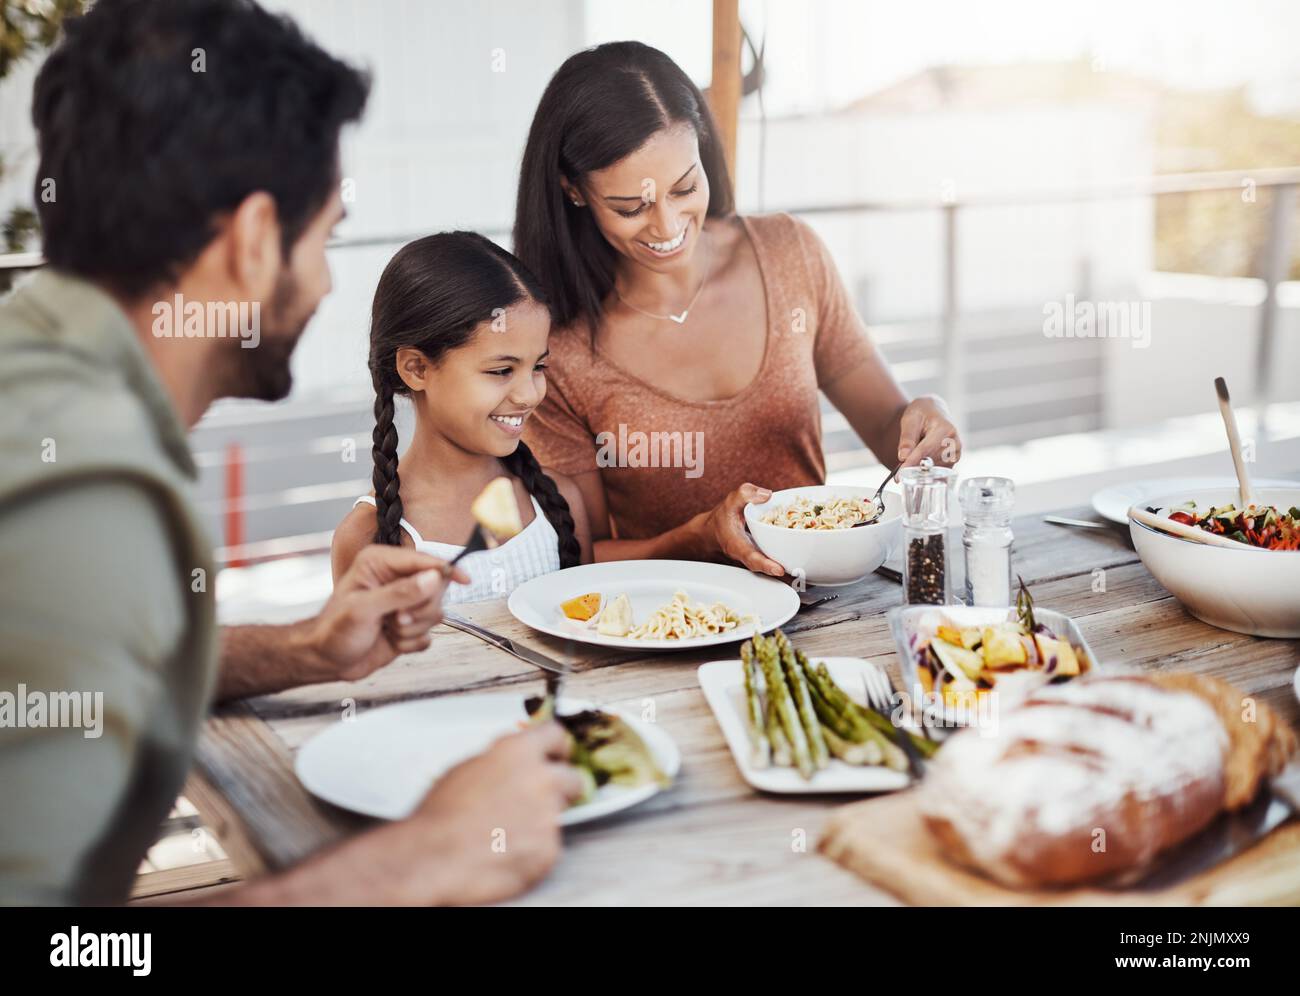 Zeit fürs Essen, Zeit für die Familie. Eine glückliche junge Familie, die gemeinsam im Freien speist. Stockfoto